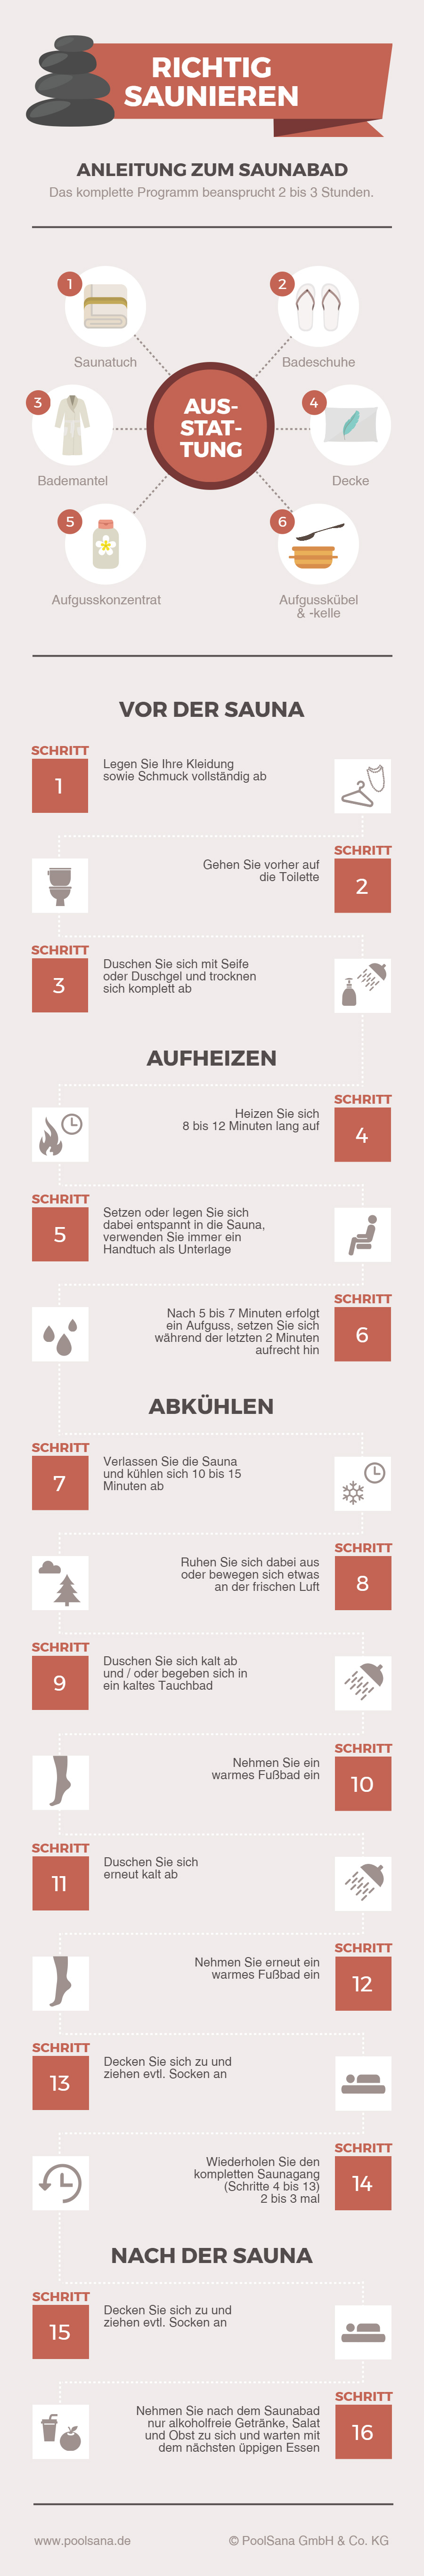 Infografik zum richtigen Saunieren